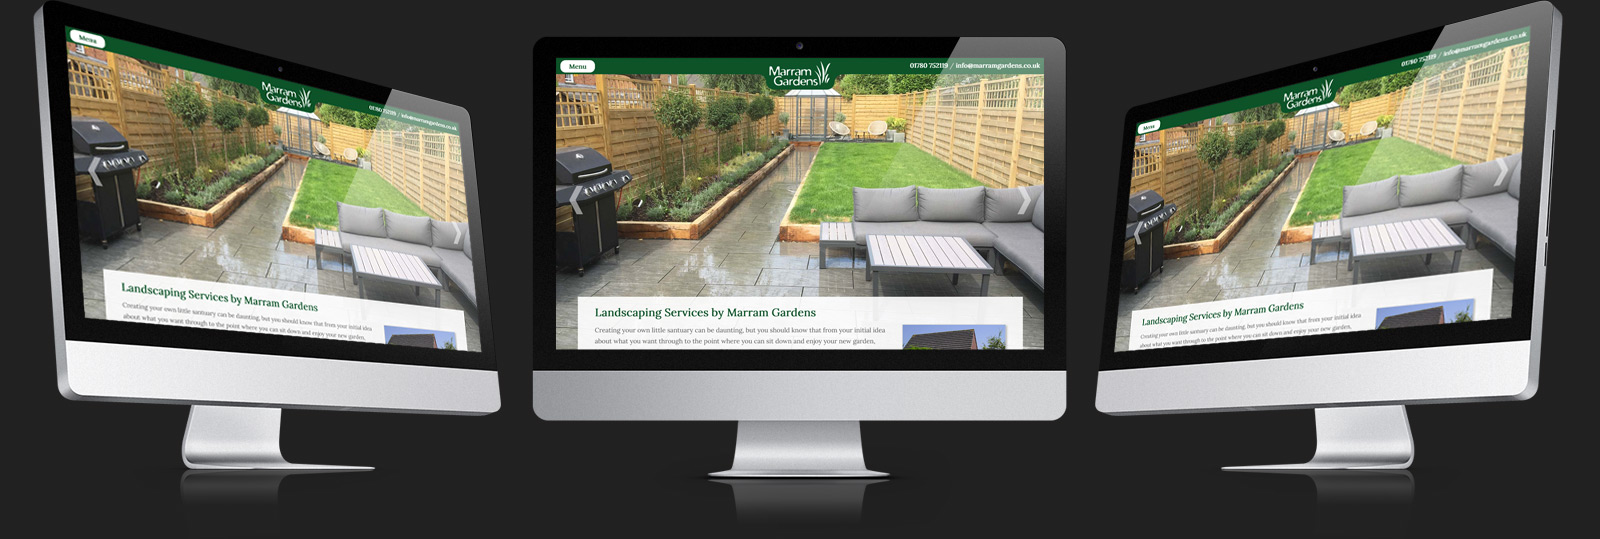 Stamford Web Design - Marram Gardens